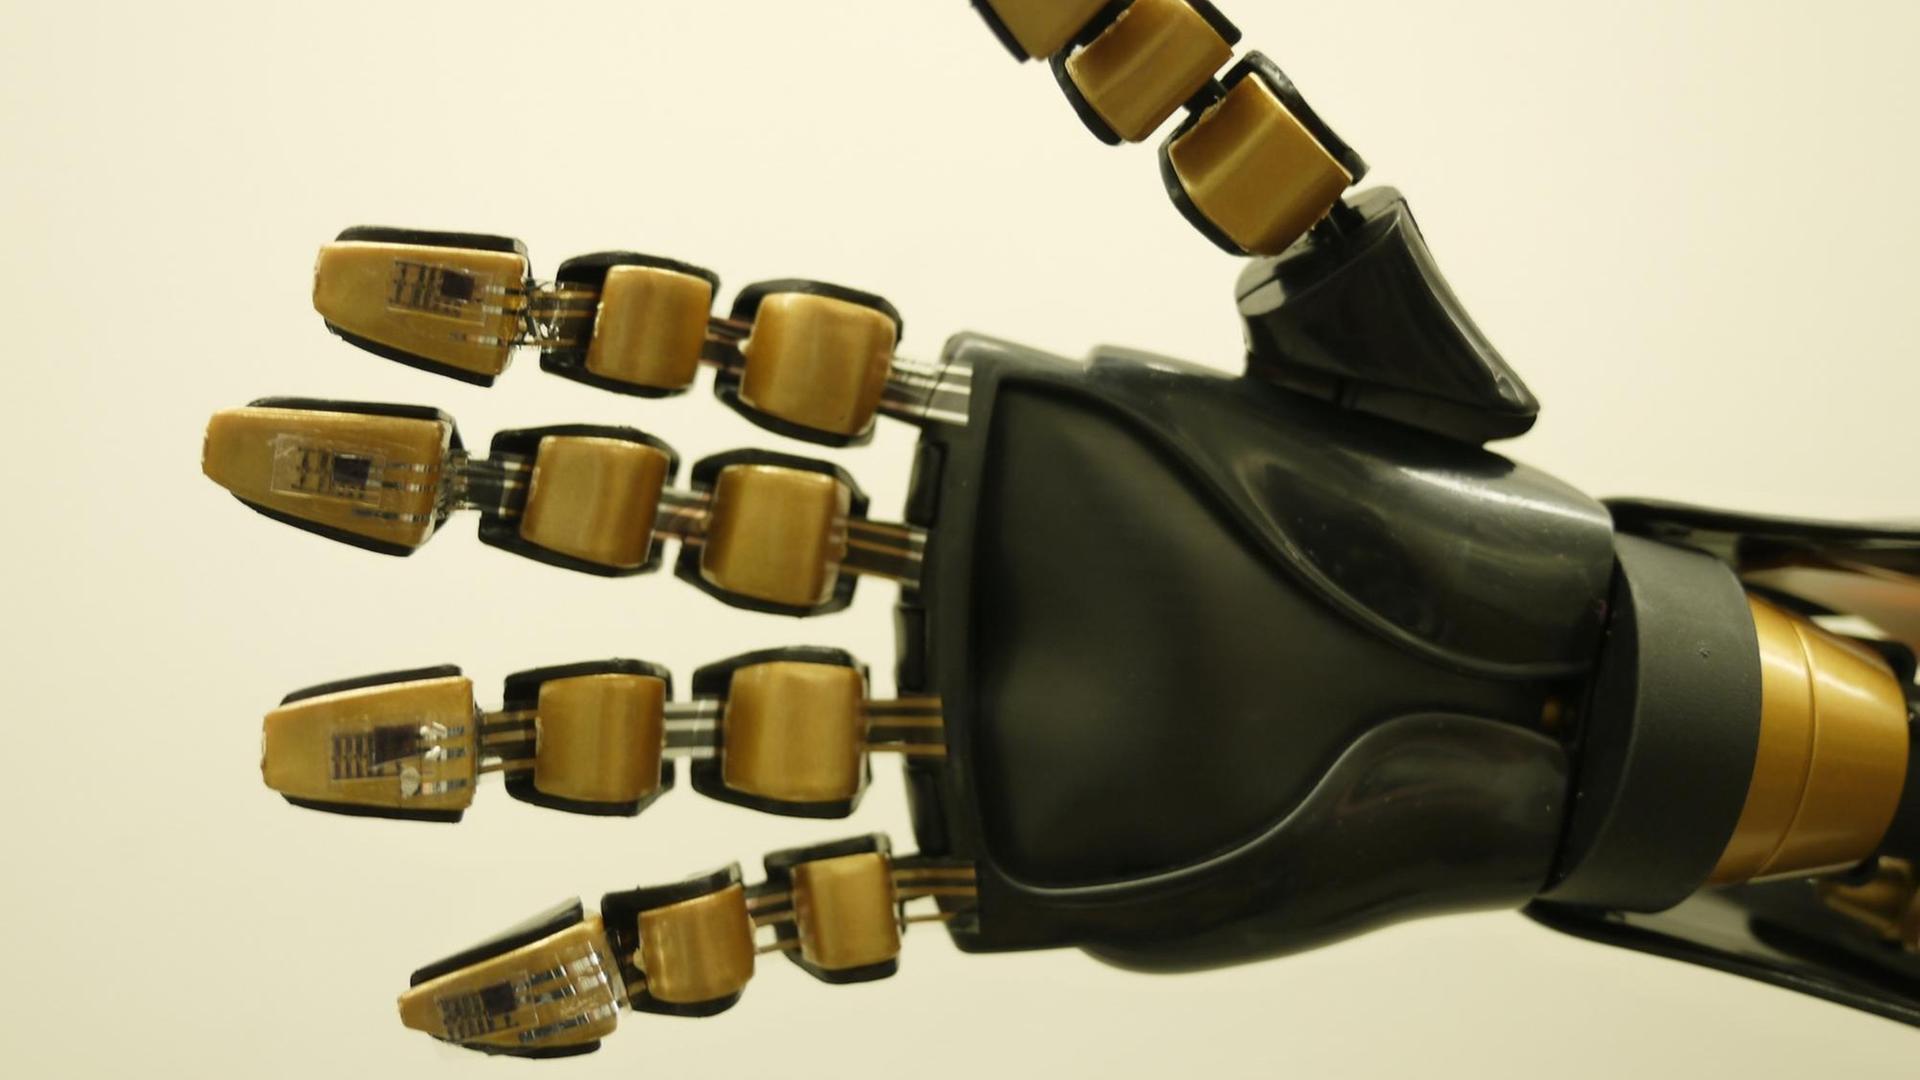 Eine künstliche Hand, bestehend aus mehreren goldfarbenen Elementen und schwarzem Plastik